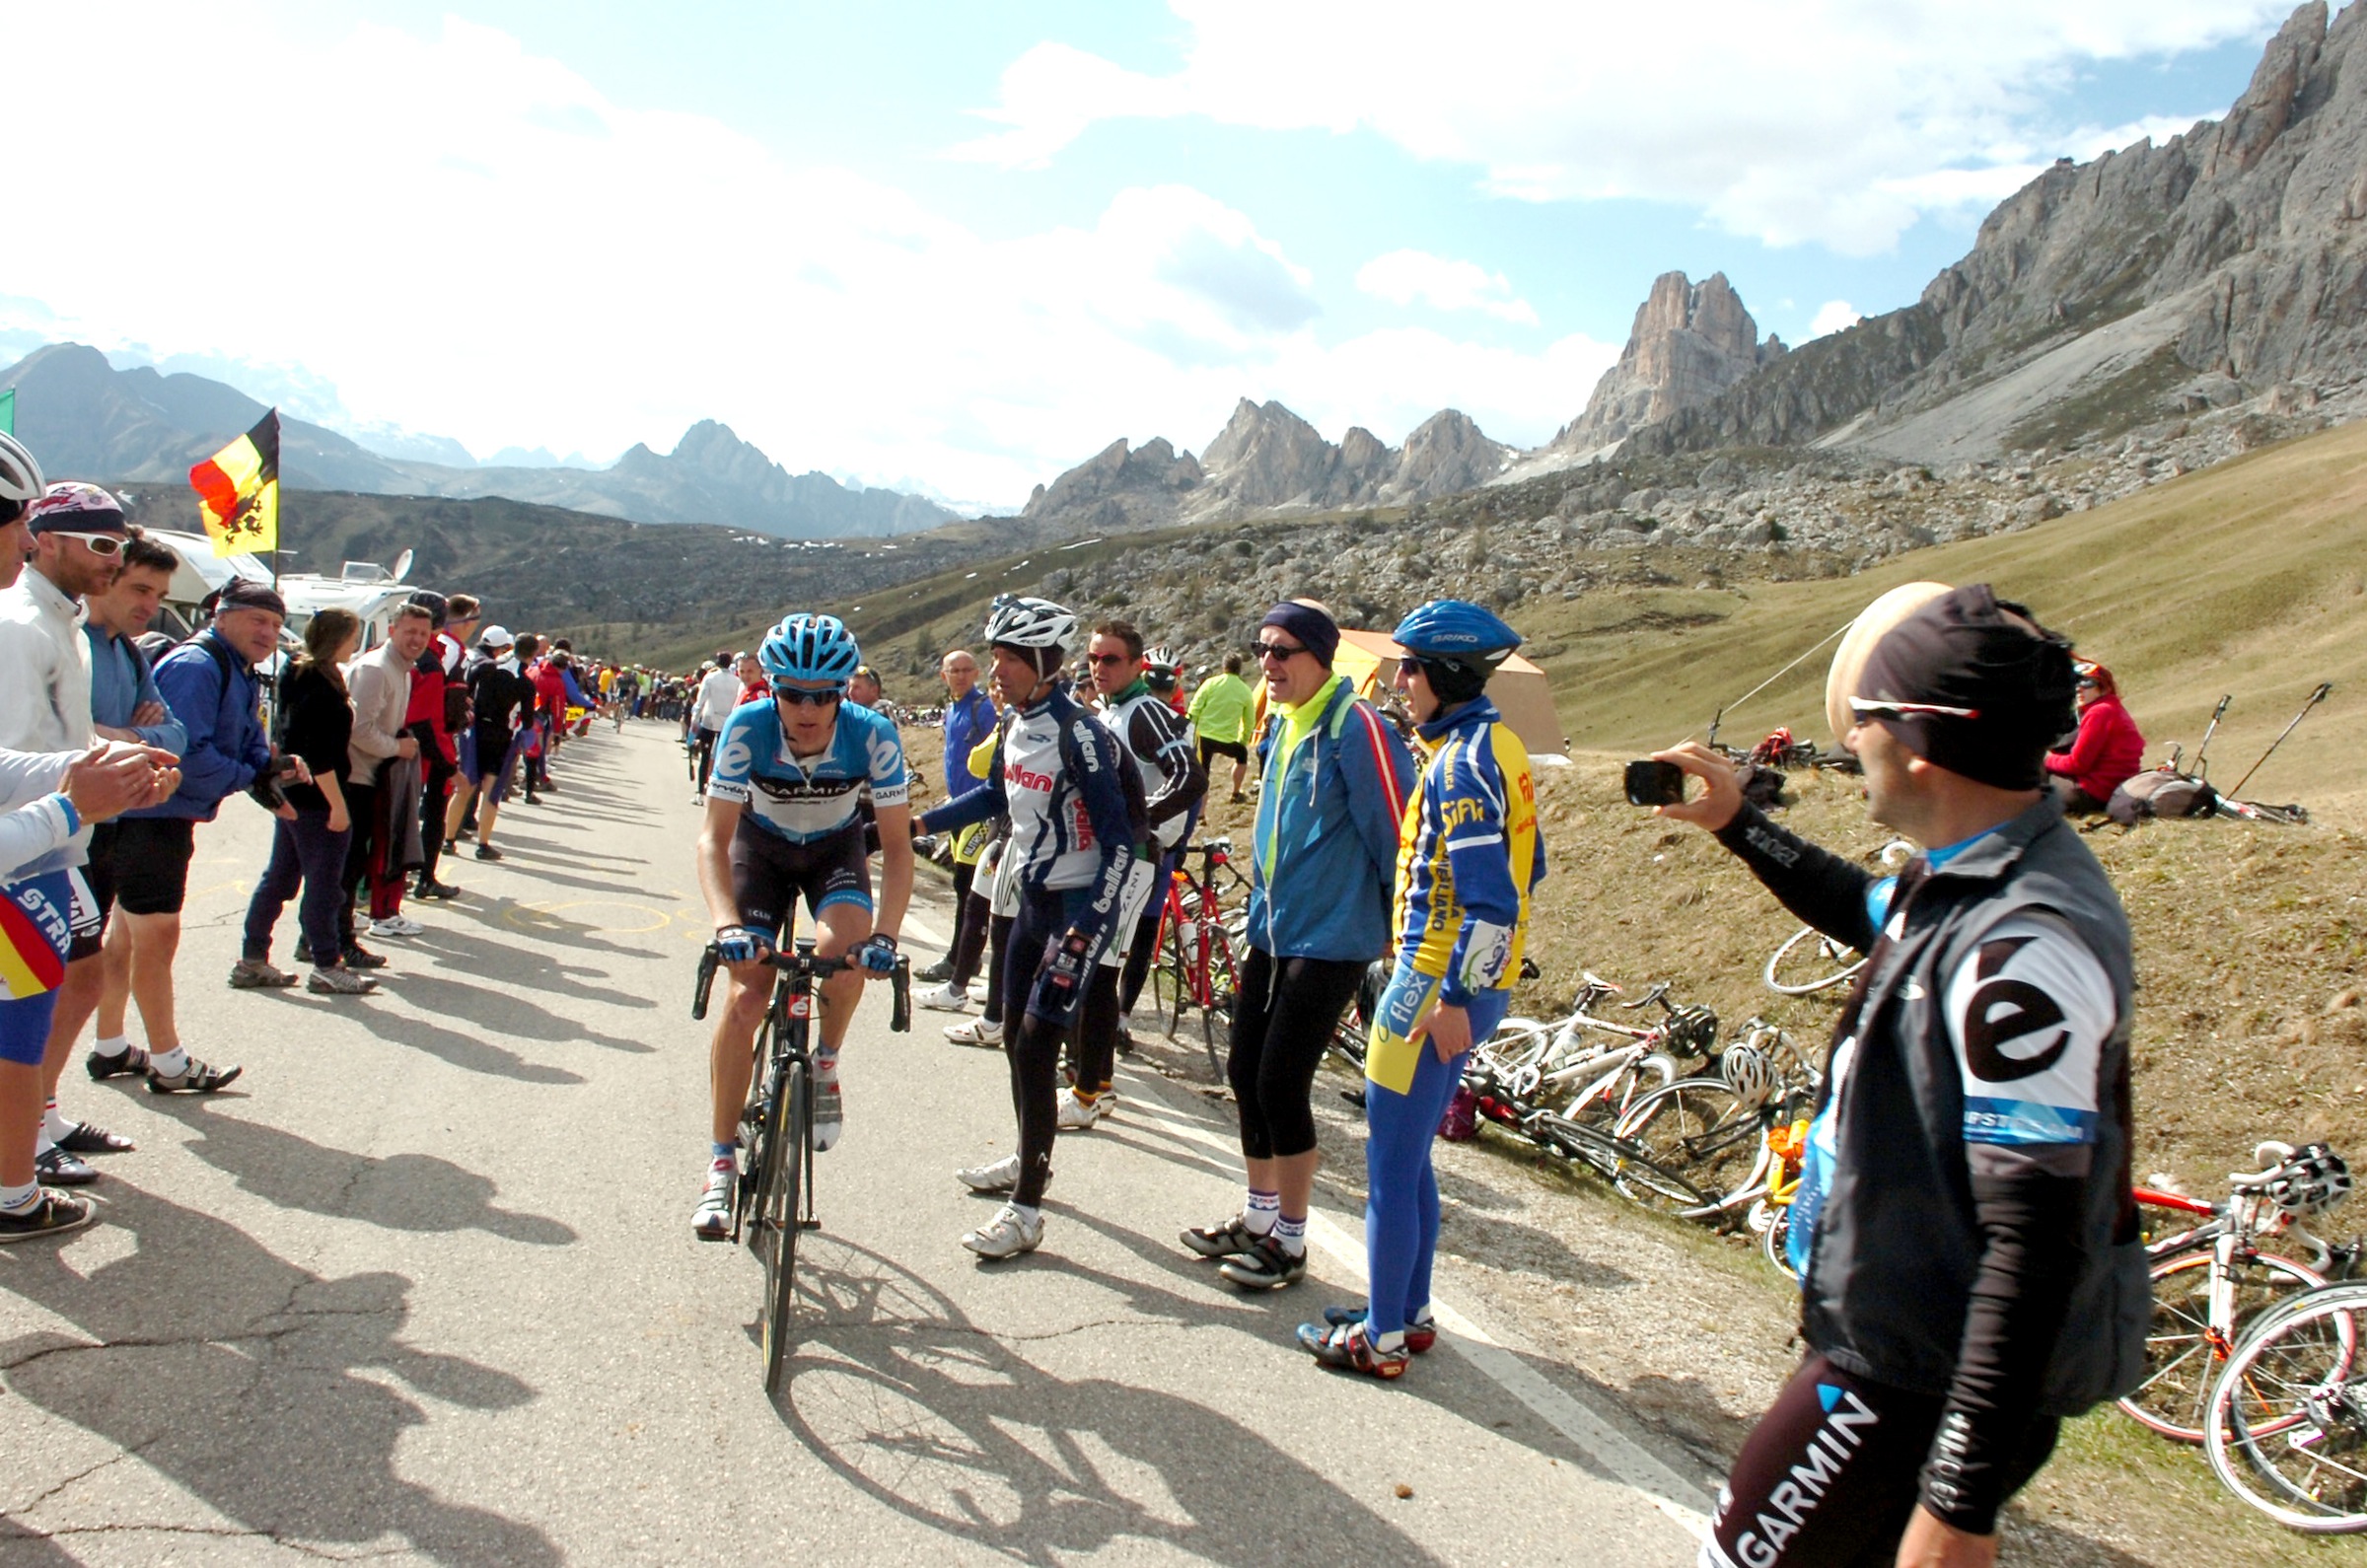 Passo Giau, Giro d'Italia 2012, stage 17, pic: ©Sirotti